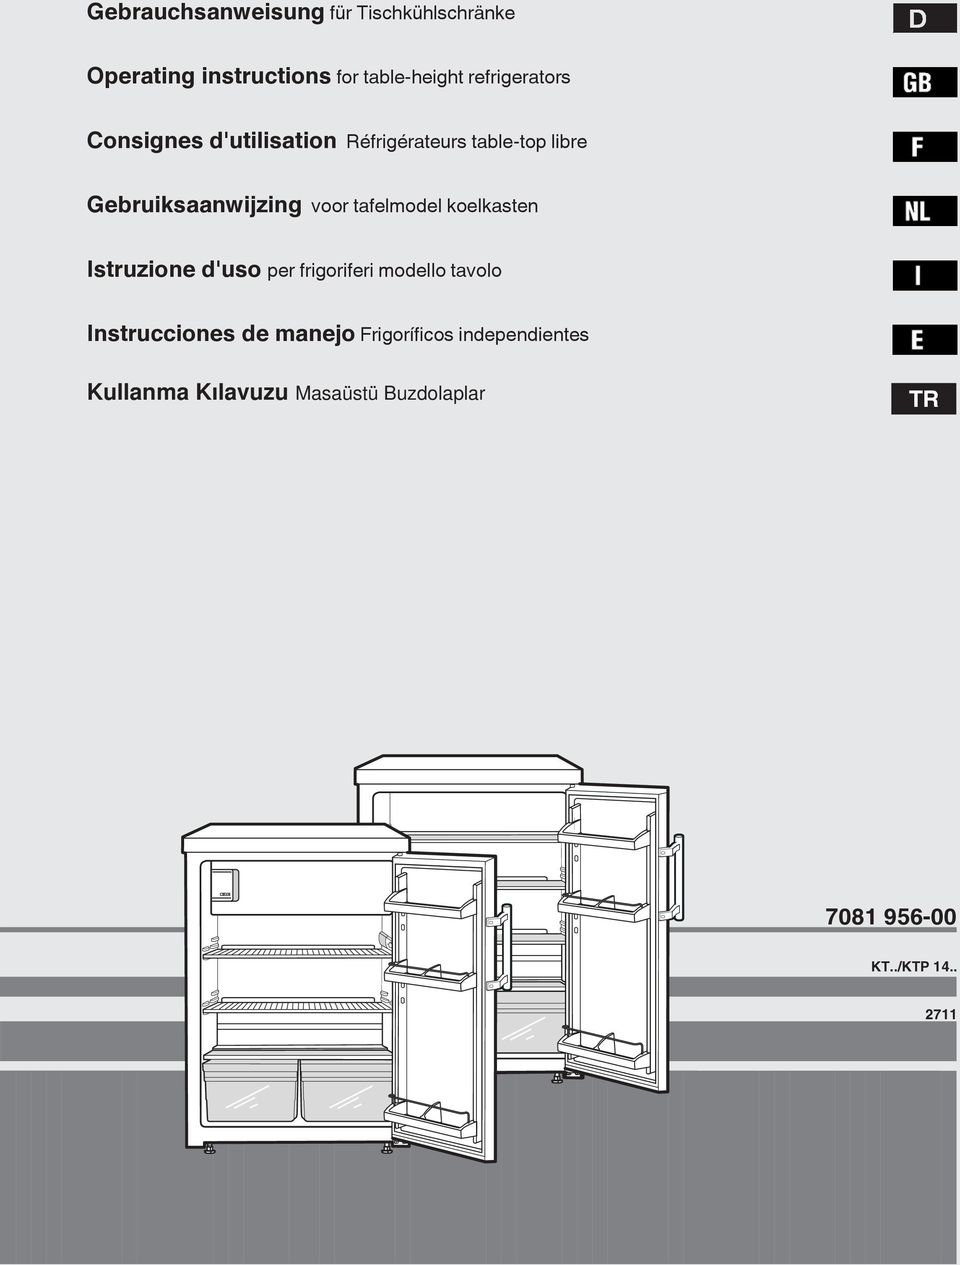 voor tafelmodel koelkasten Istruzione d'uso per frigoriferi modello tavolo Instrucciones de